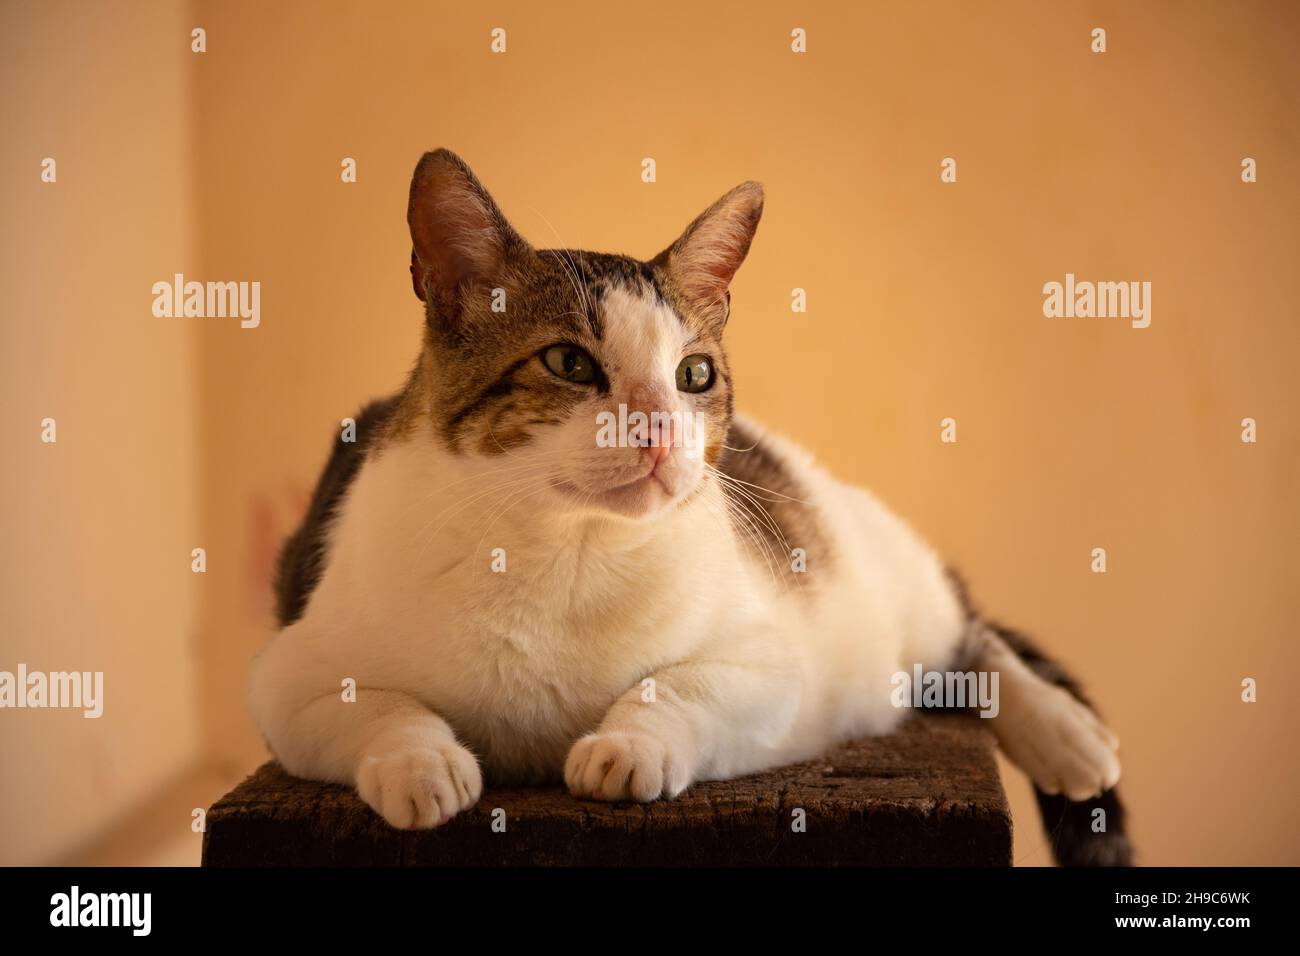 Goiânia, Goias, Brasile – 05 dicembre 2021: Un gatto tabby sdraiato, riposato, su una superficie di legno con sfondo giallo. Foto Stock